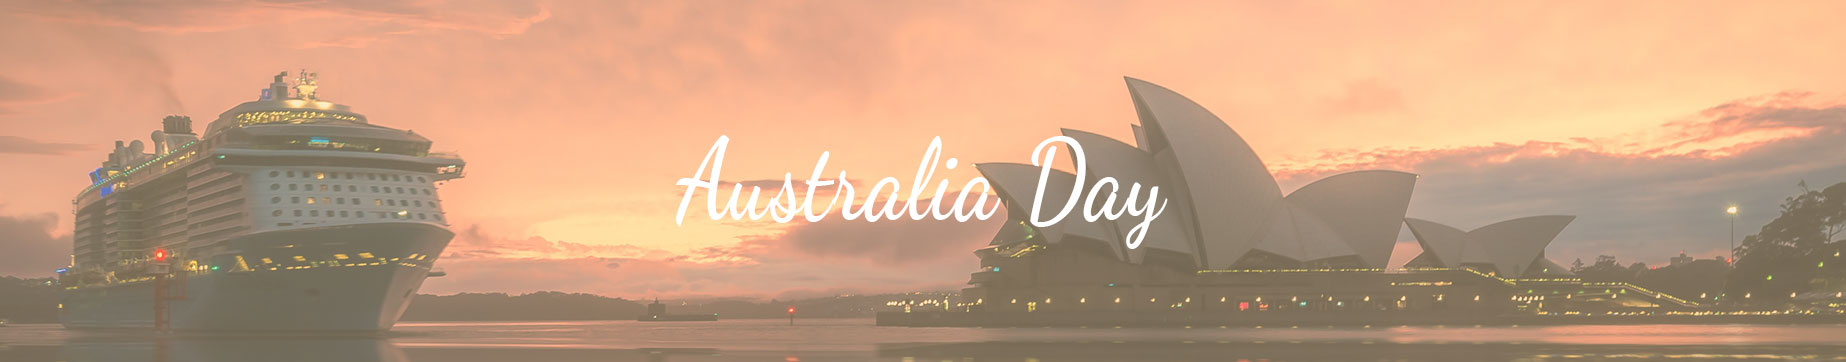 Celebrations Australia Day Under $50